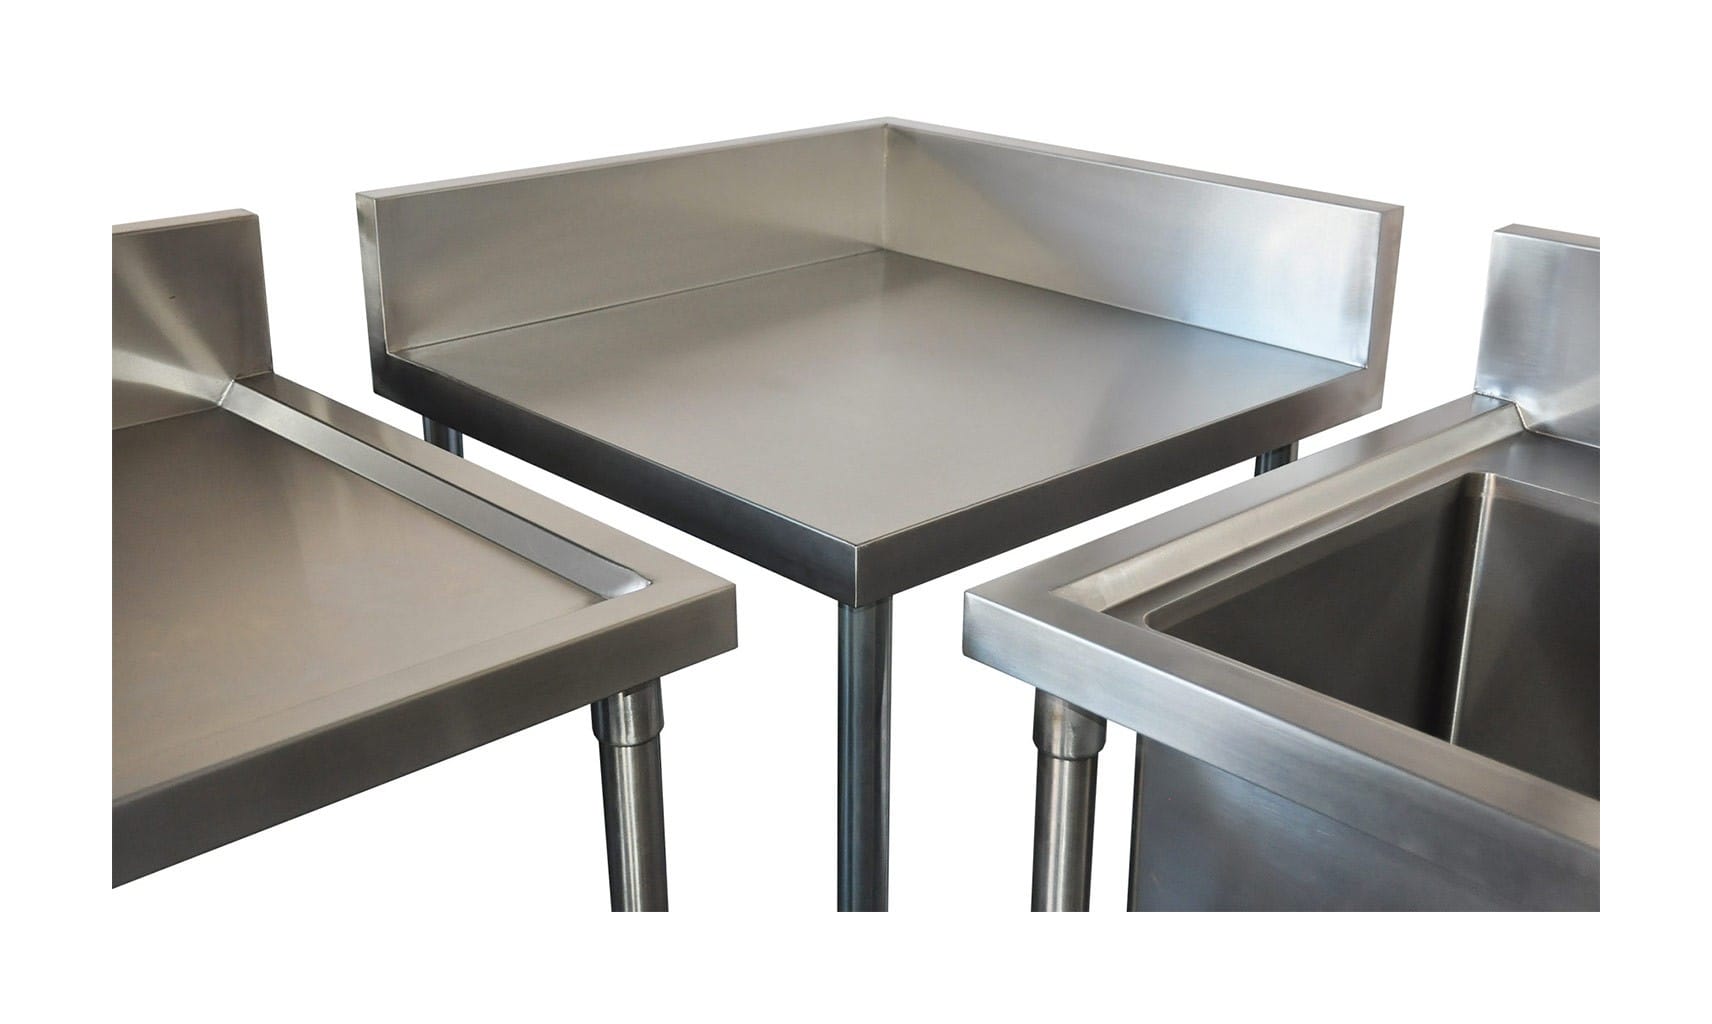 Commercial Grade Stainless Steel Corner 700mm Splashback Bench, 700 X 700 x 900mm high